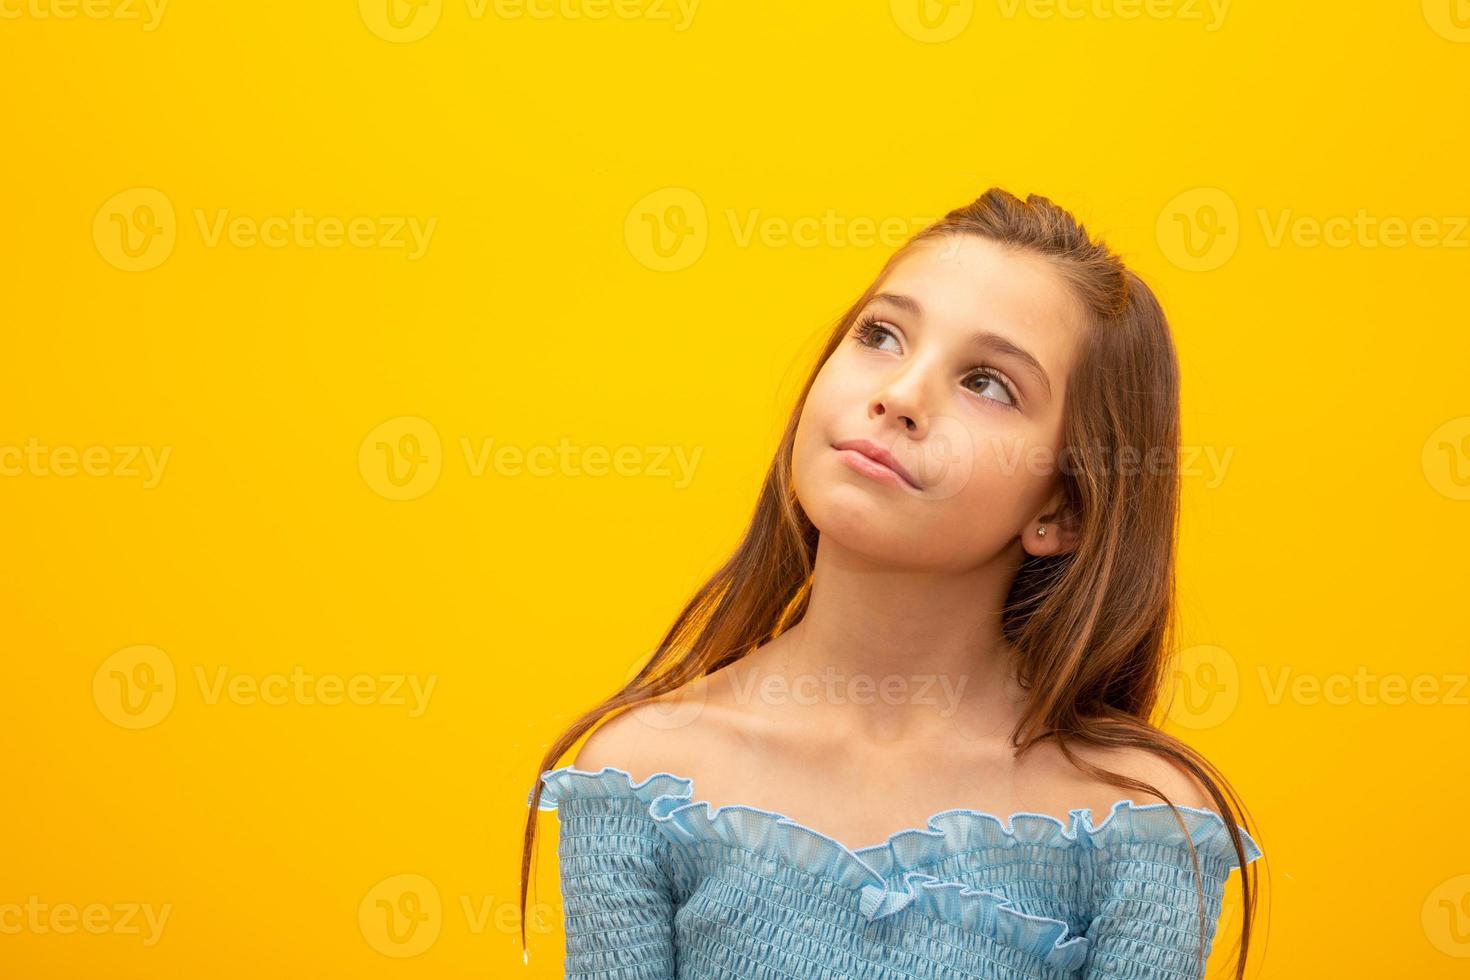 hermoso retrato femenino de medio cuerpo aislado en el fondo amarillo del estudio. pequeña niña brasileña emocional. expresión facial, emociones humanas, concepto publicitario. pensando, mirando hacia arriba. foto